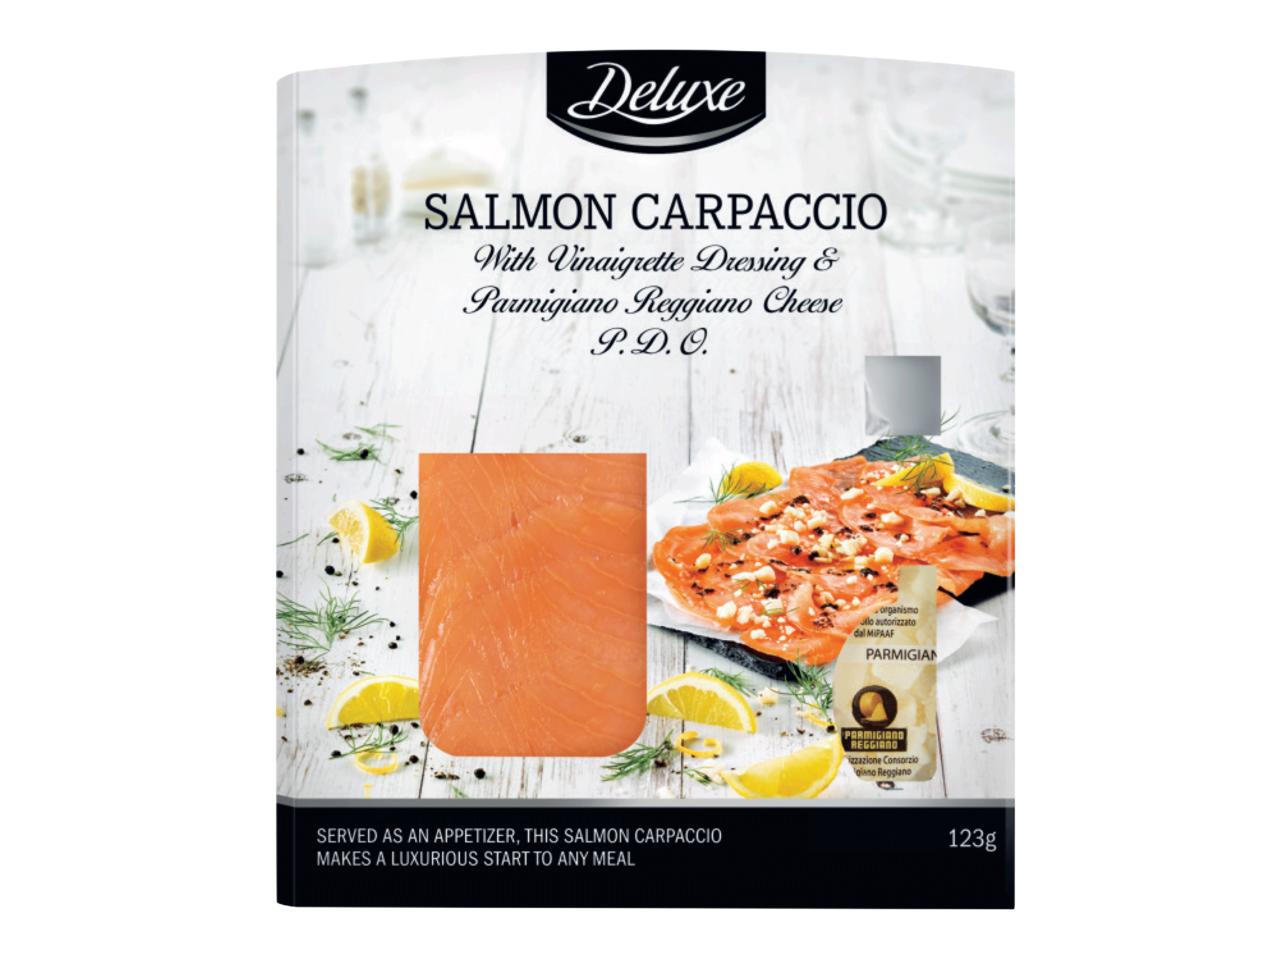 DELUXE Salmon Carpaccio